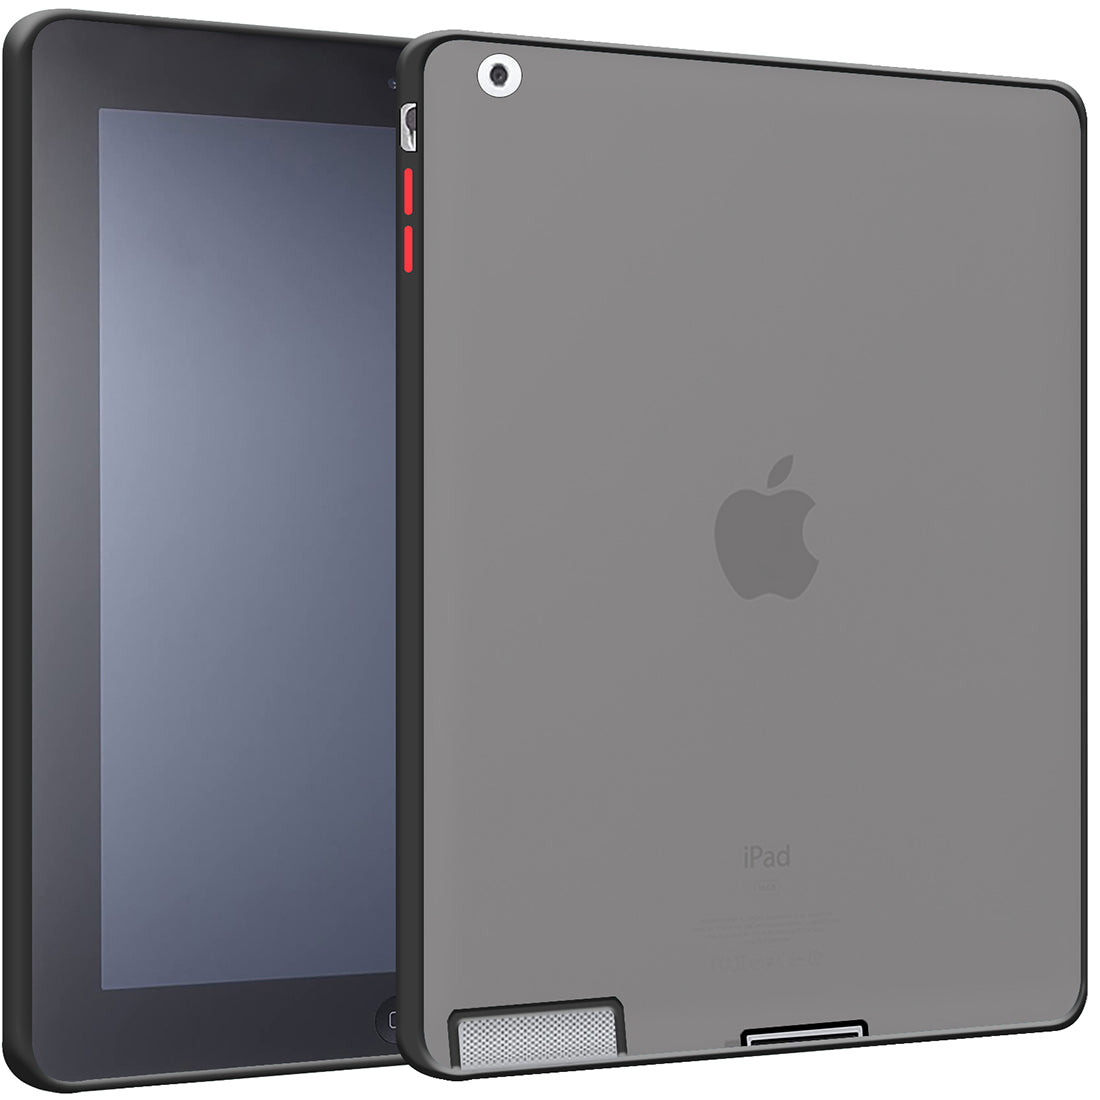 Apple iPad 2/3/4 (9.7 inch)